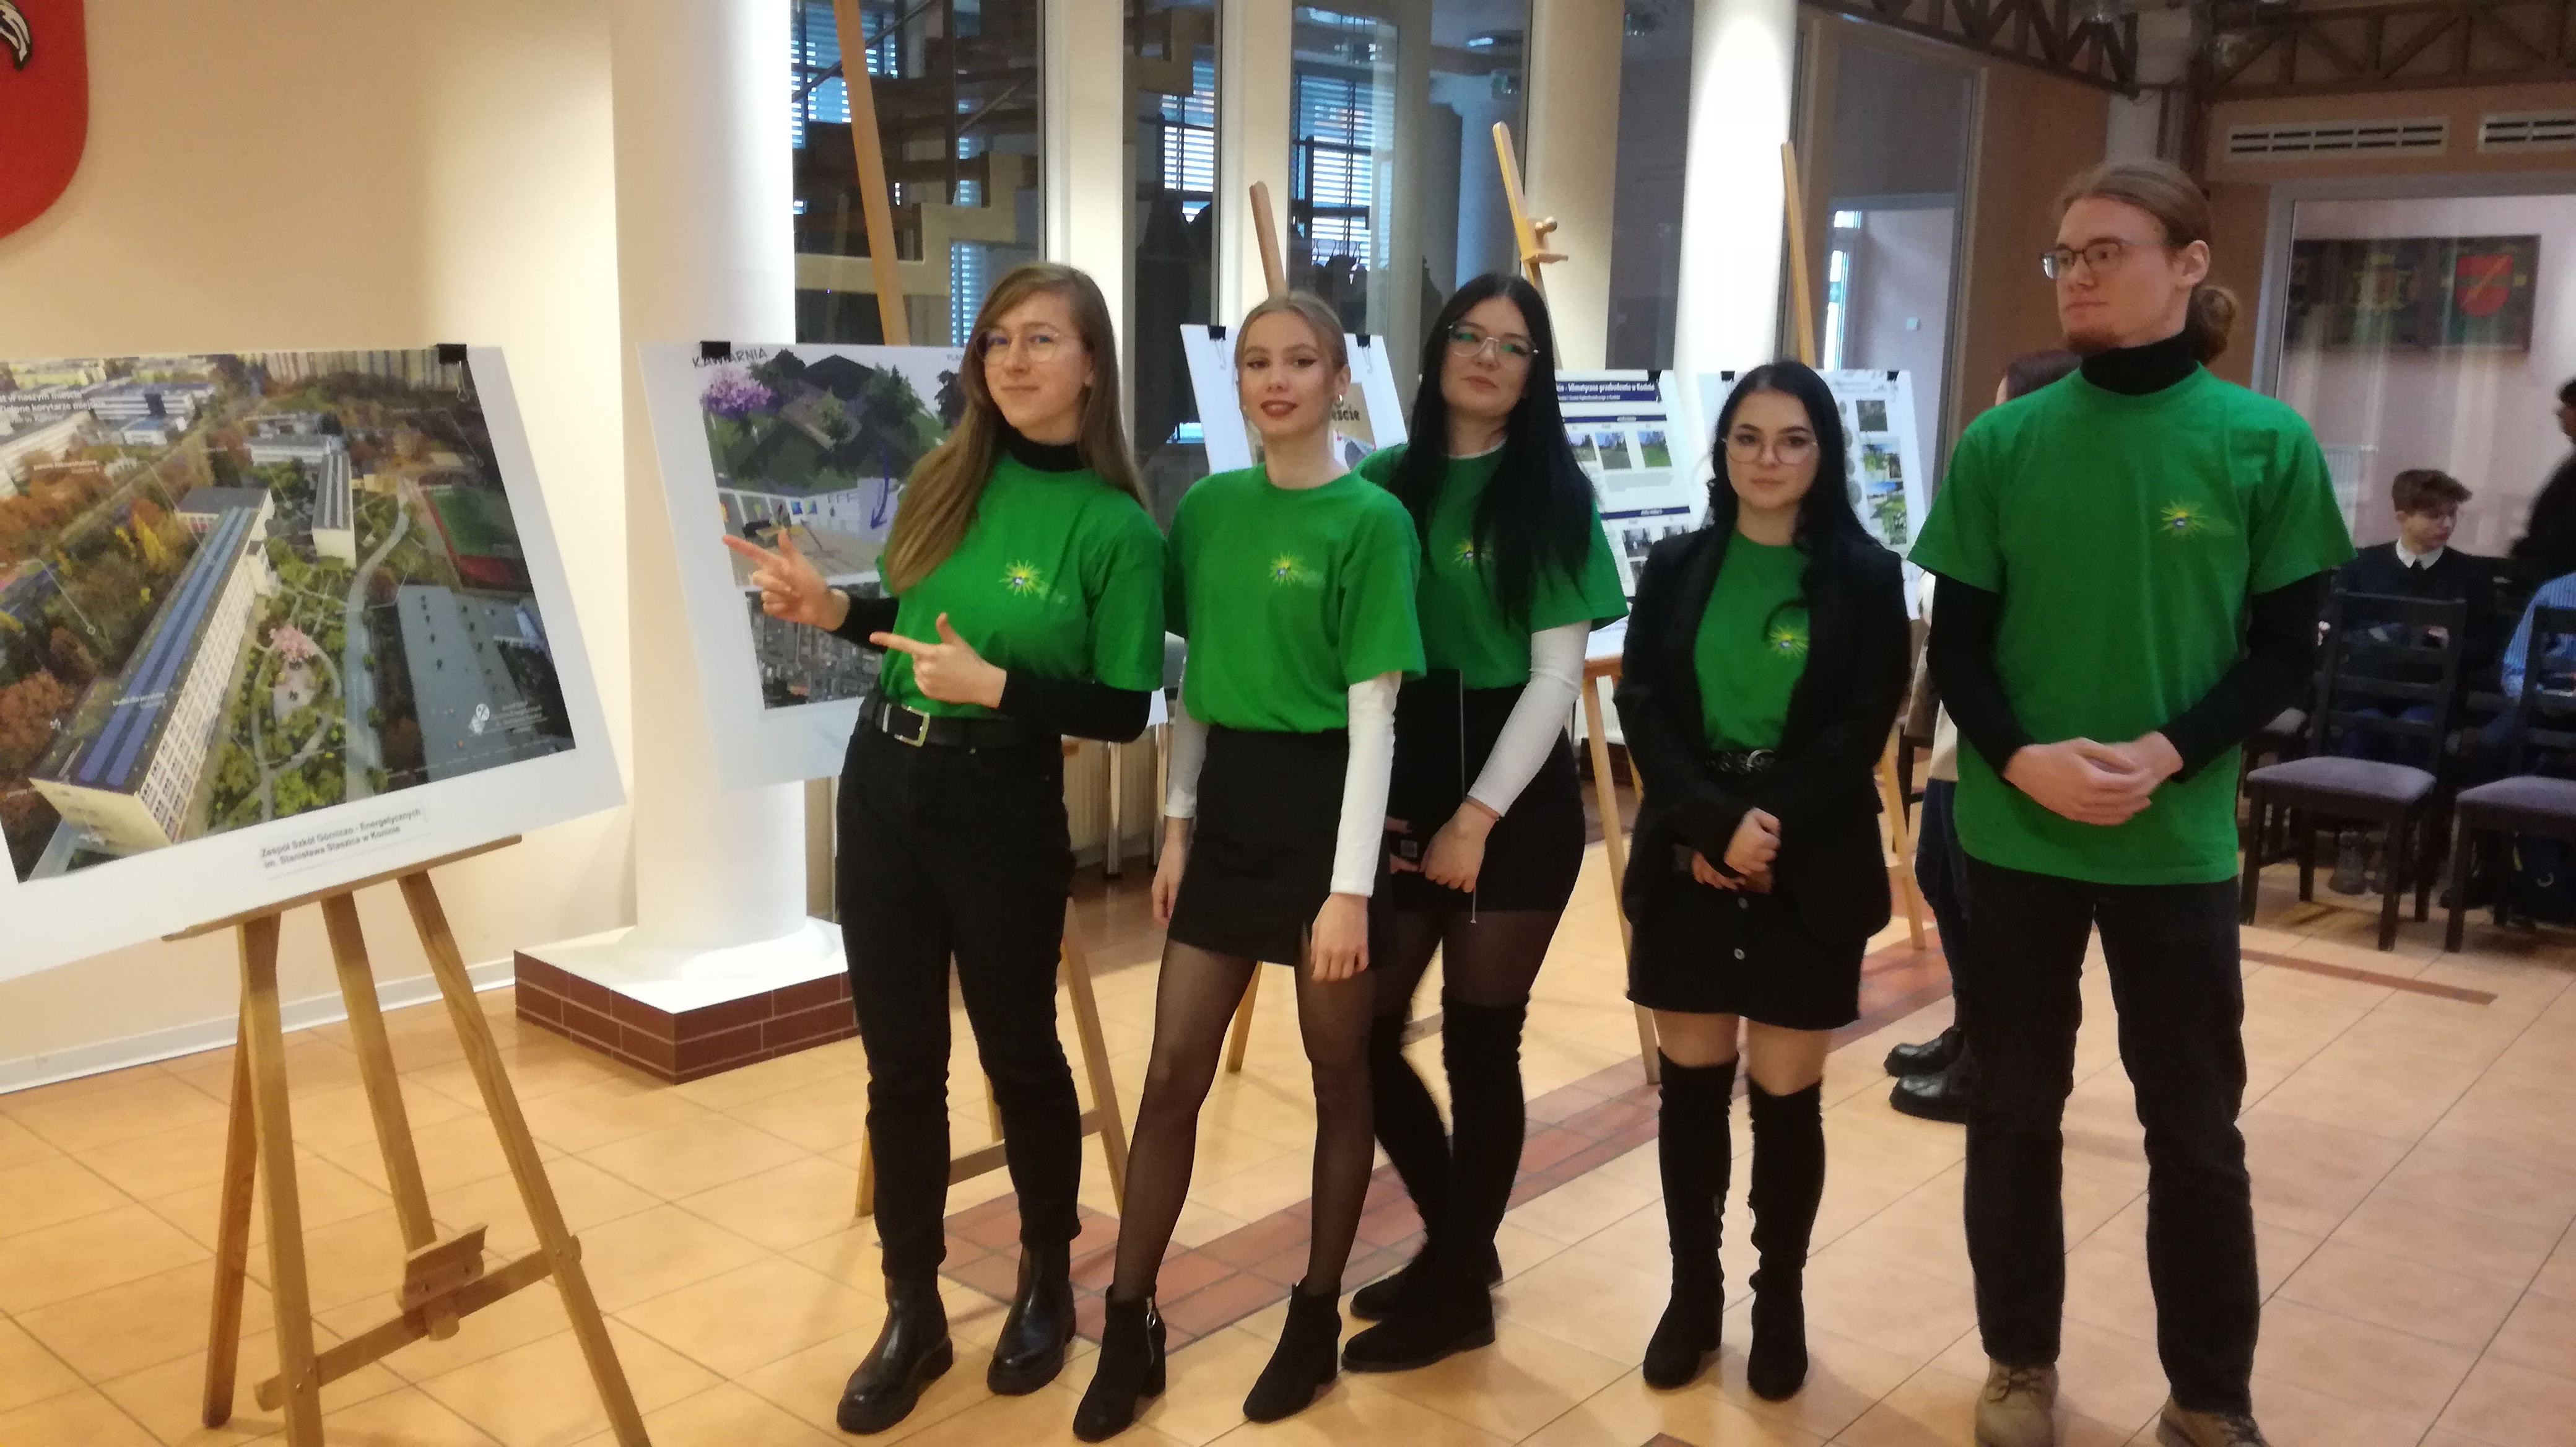 cztery dziewczyny i jeden chłopak w zielonych koszulkach, jedna dziewczyna wskazuje na ilustrację stojącą na sztaludze